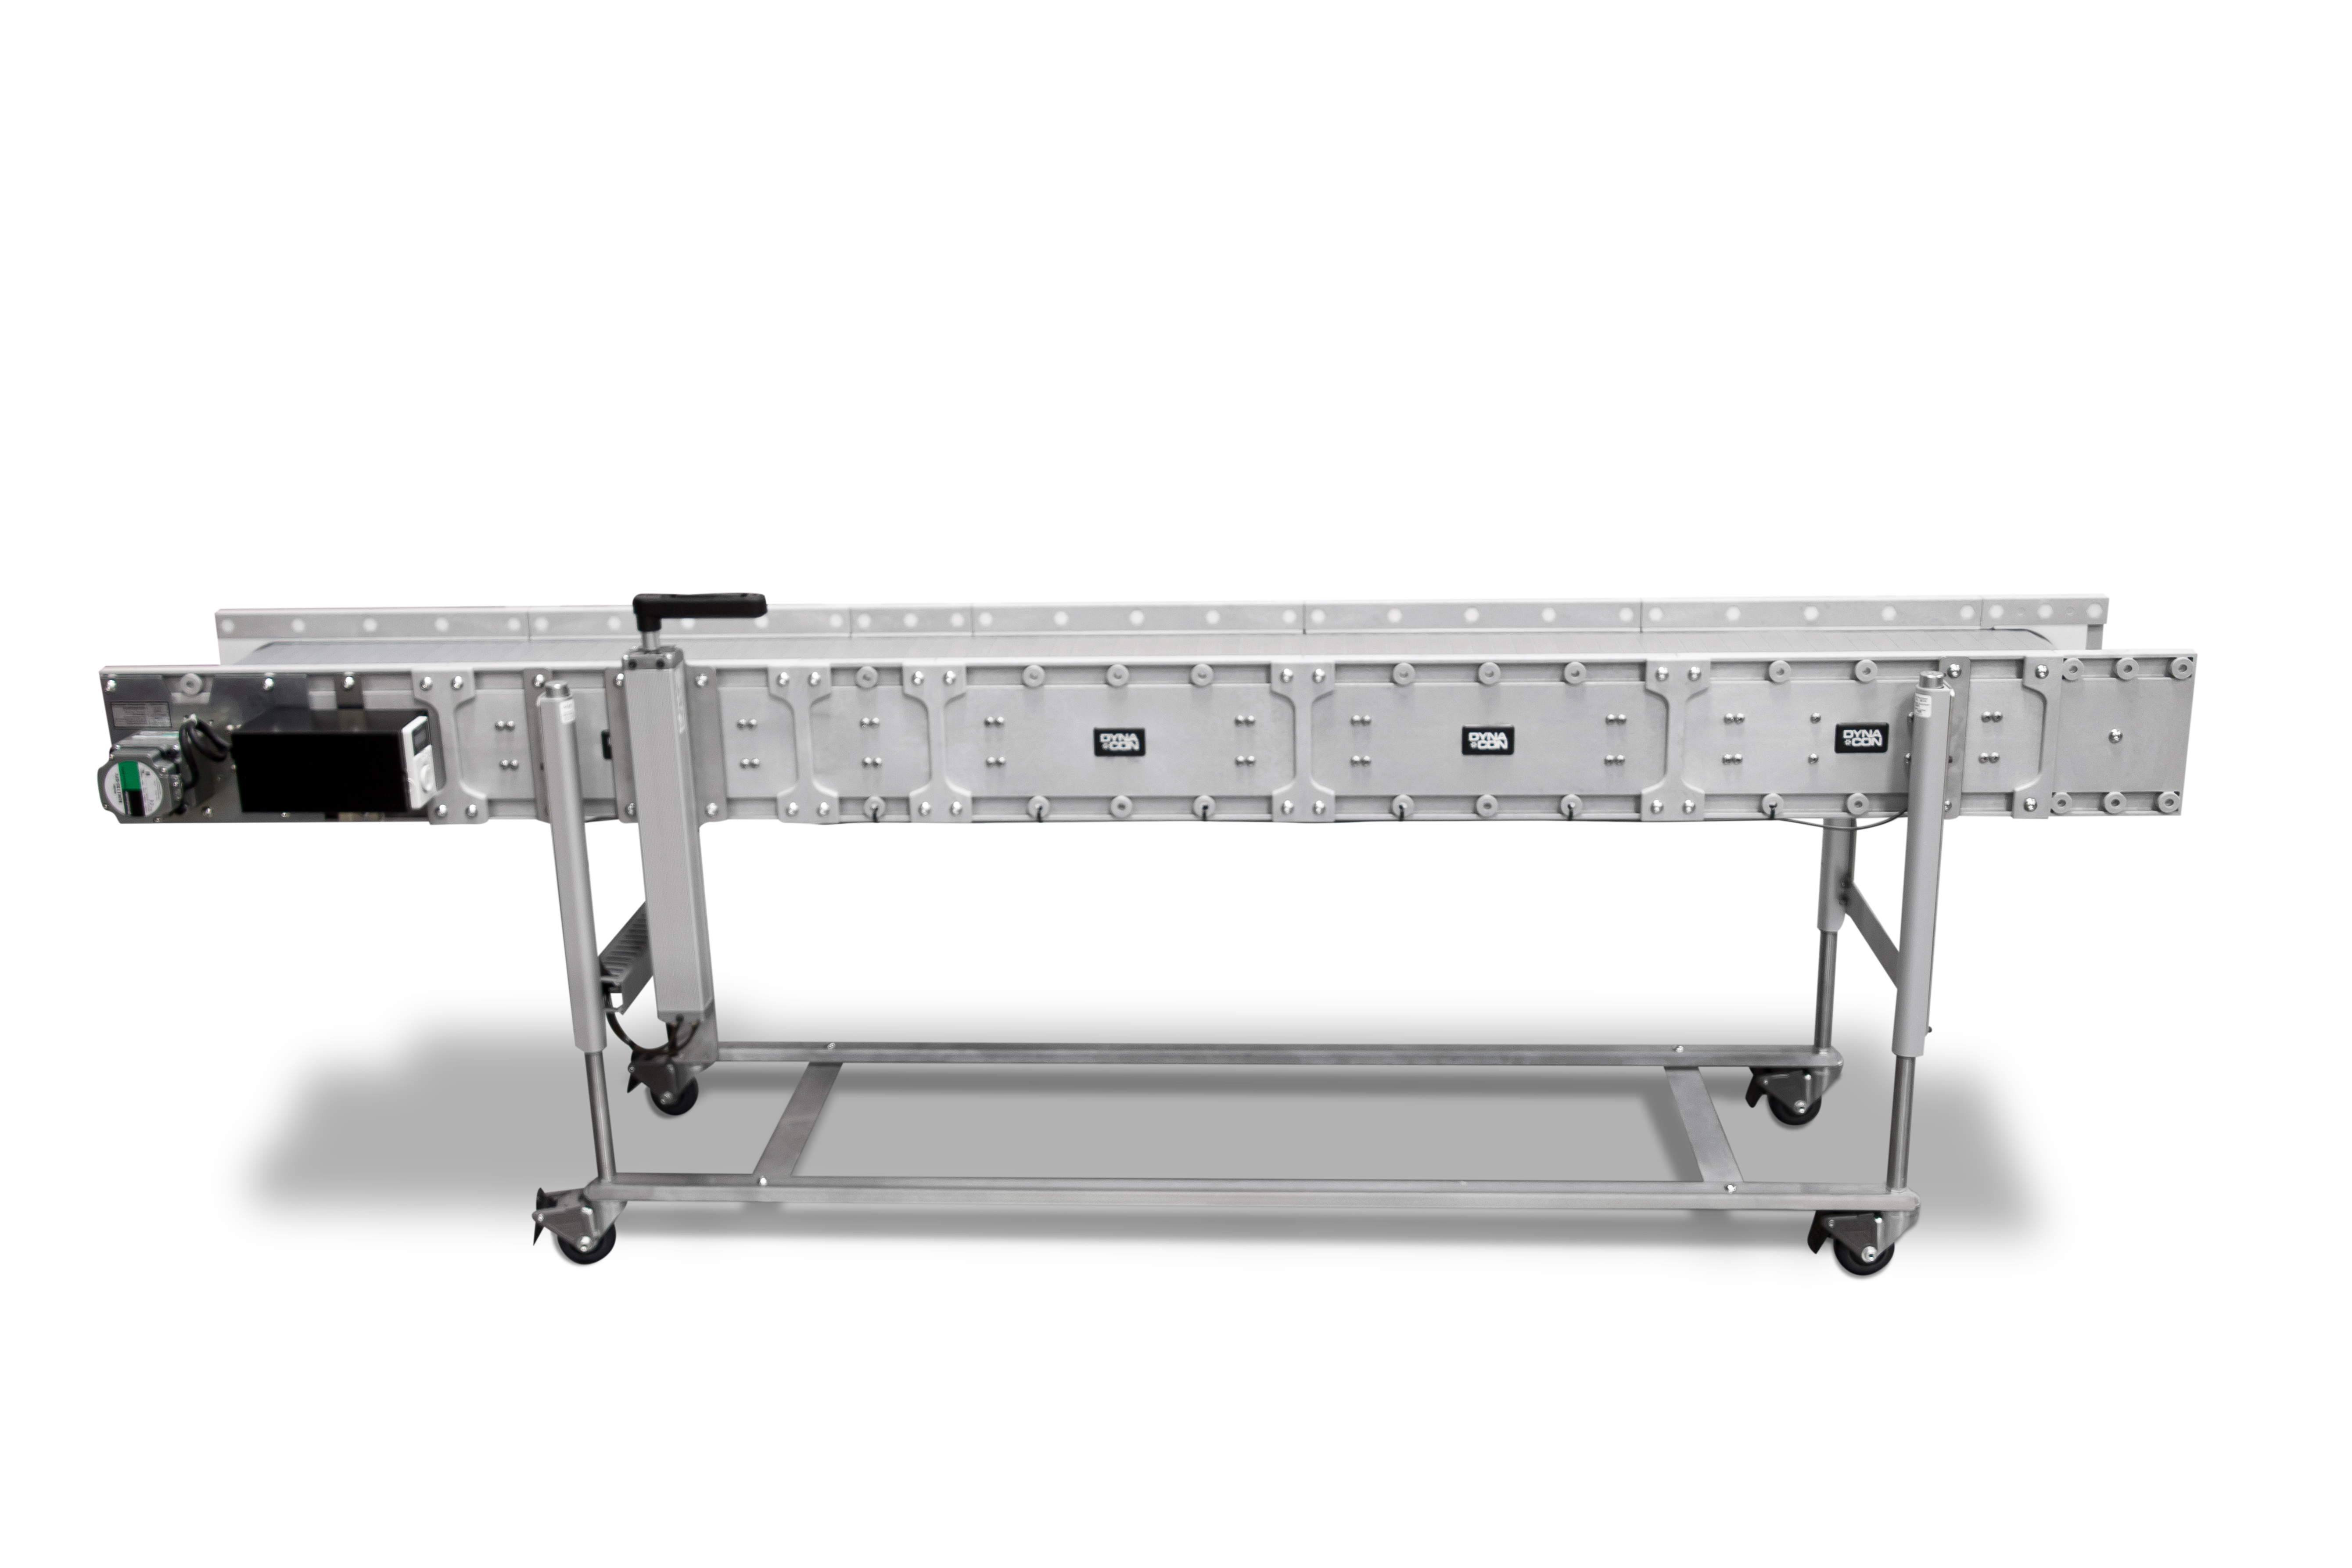 DynaCon ergonomic flat belt conveyor